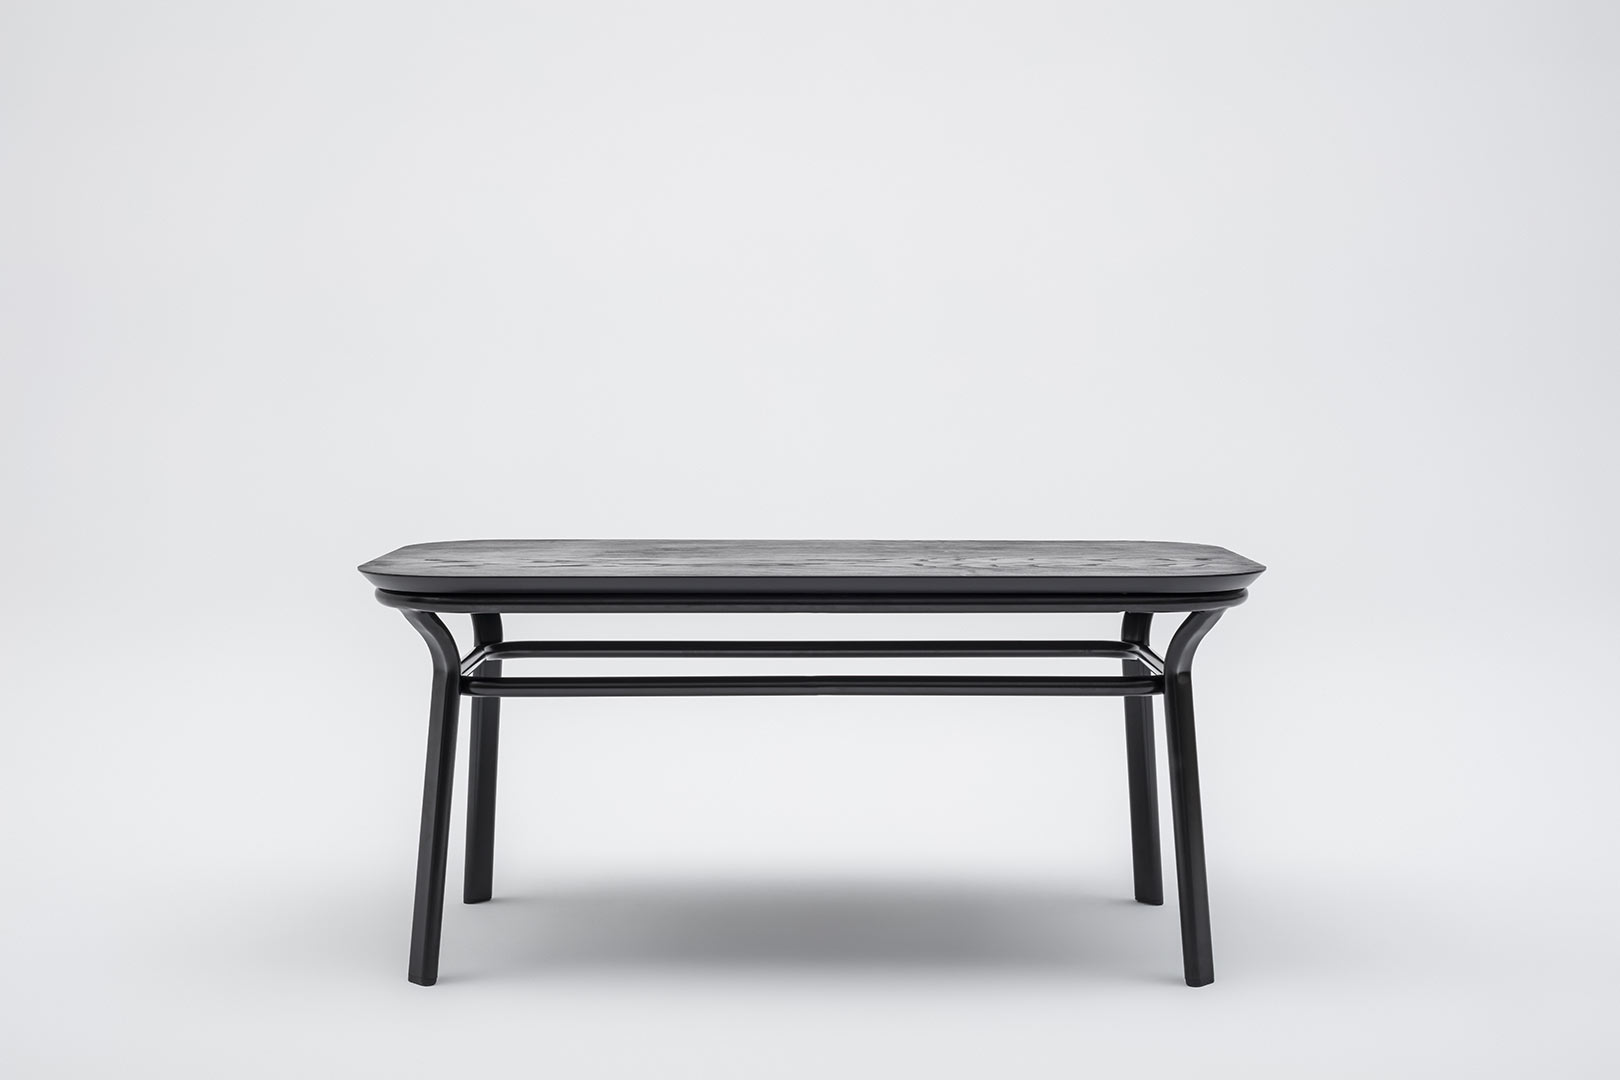 Table basse moderne rectangulaire noire Paul